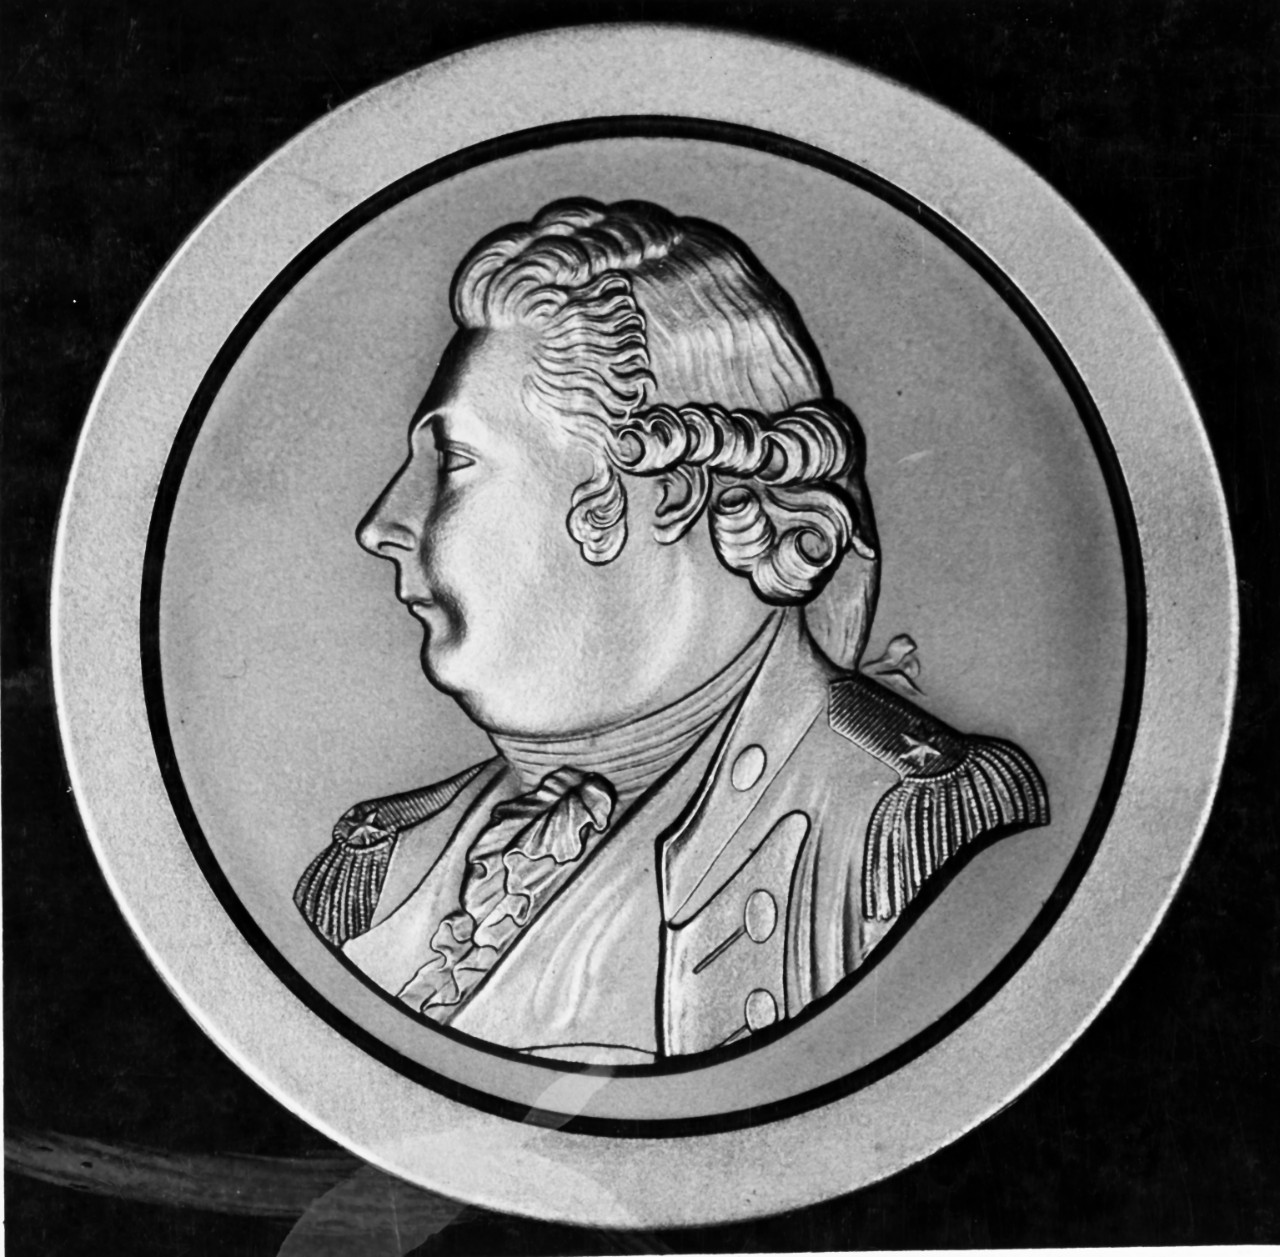 Thomas Truxton Medal